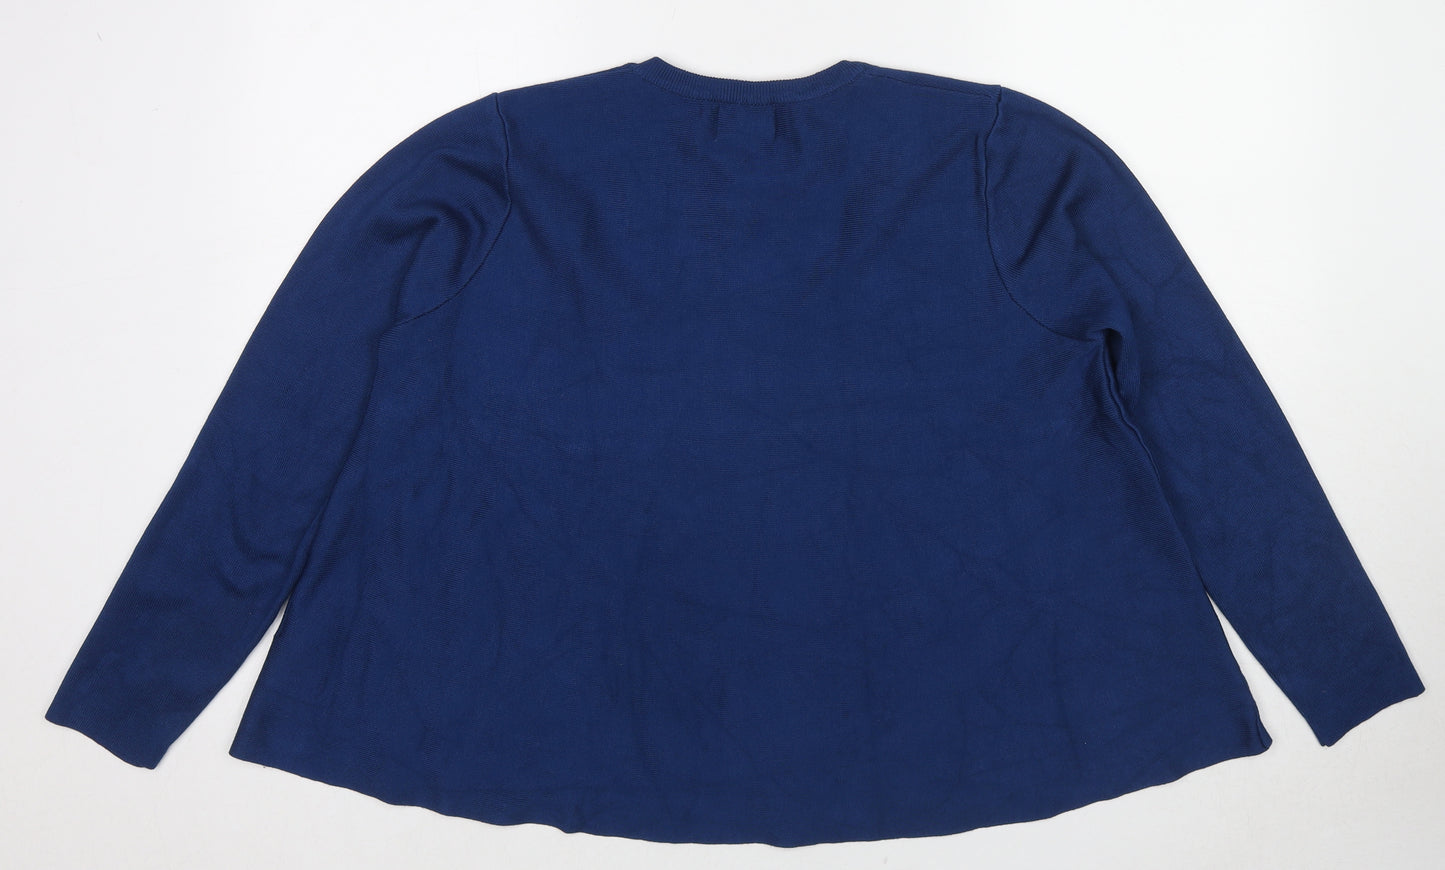 Compania Fantastica Womens Blue Round Neck Viscose Pullover Jumper Size M